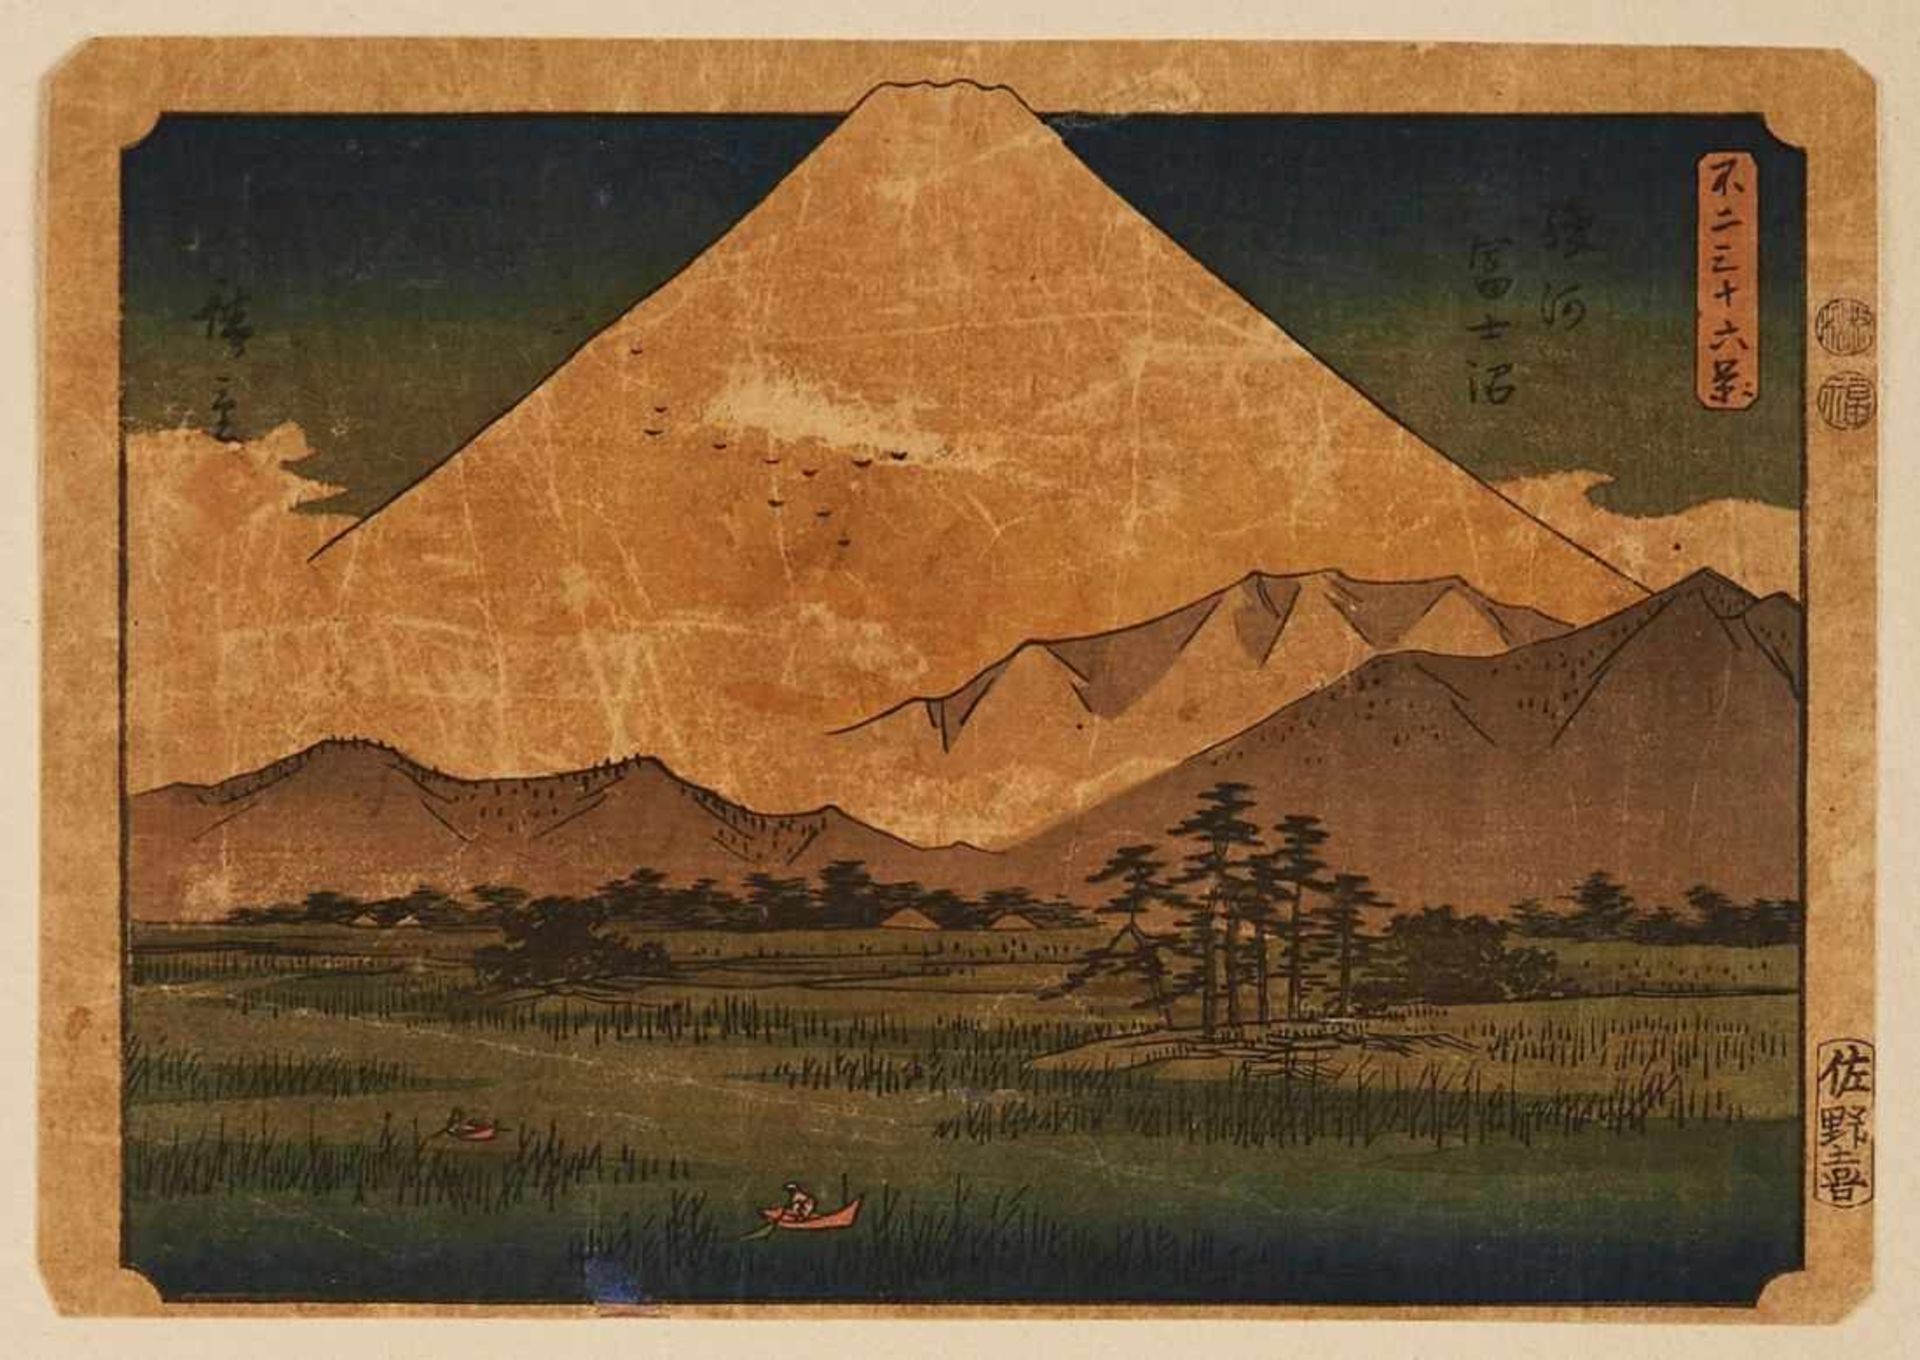 2 Farbholzschnitte Hiroshige Ando1797 - 1858 "Aus: Die 36 Ansichten des Berges Fuji" 17,5 x 25 cm u. - Image 3 of 3